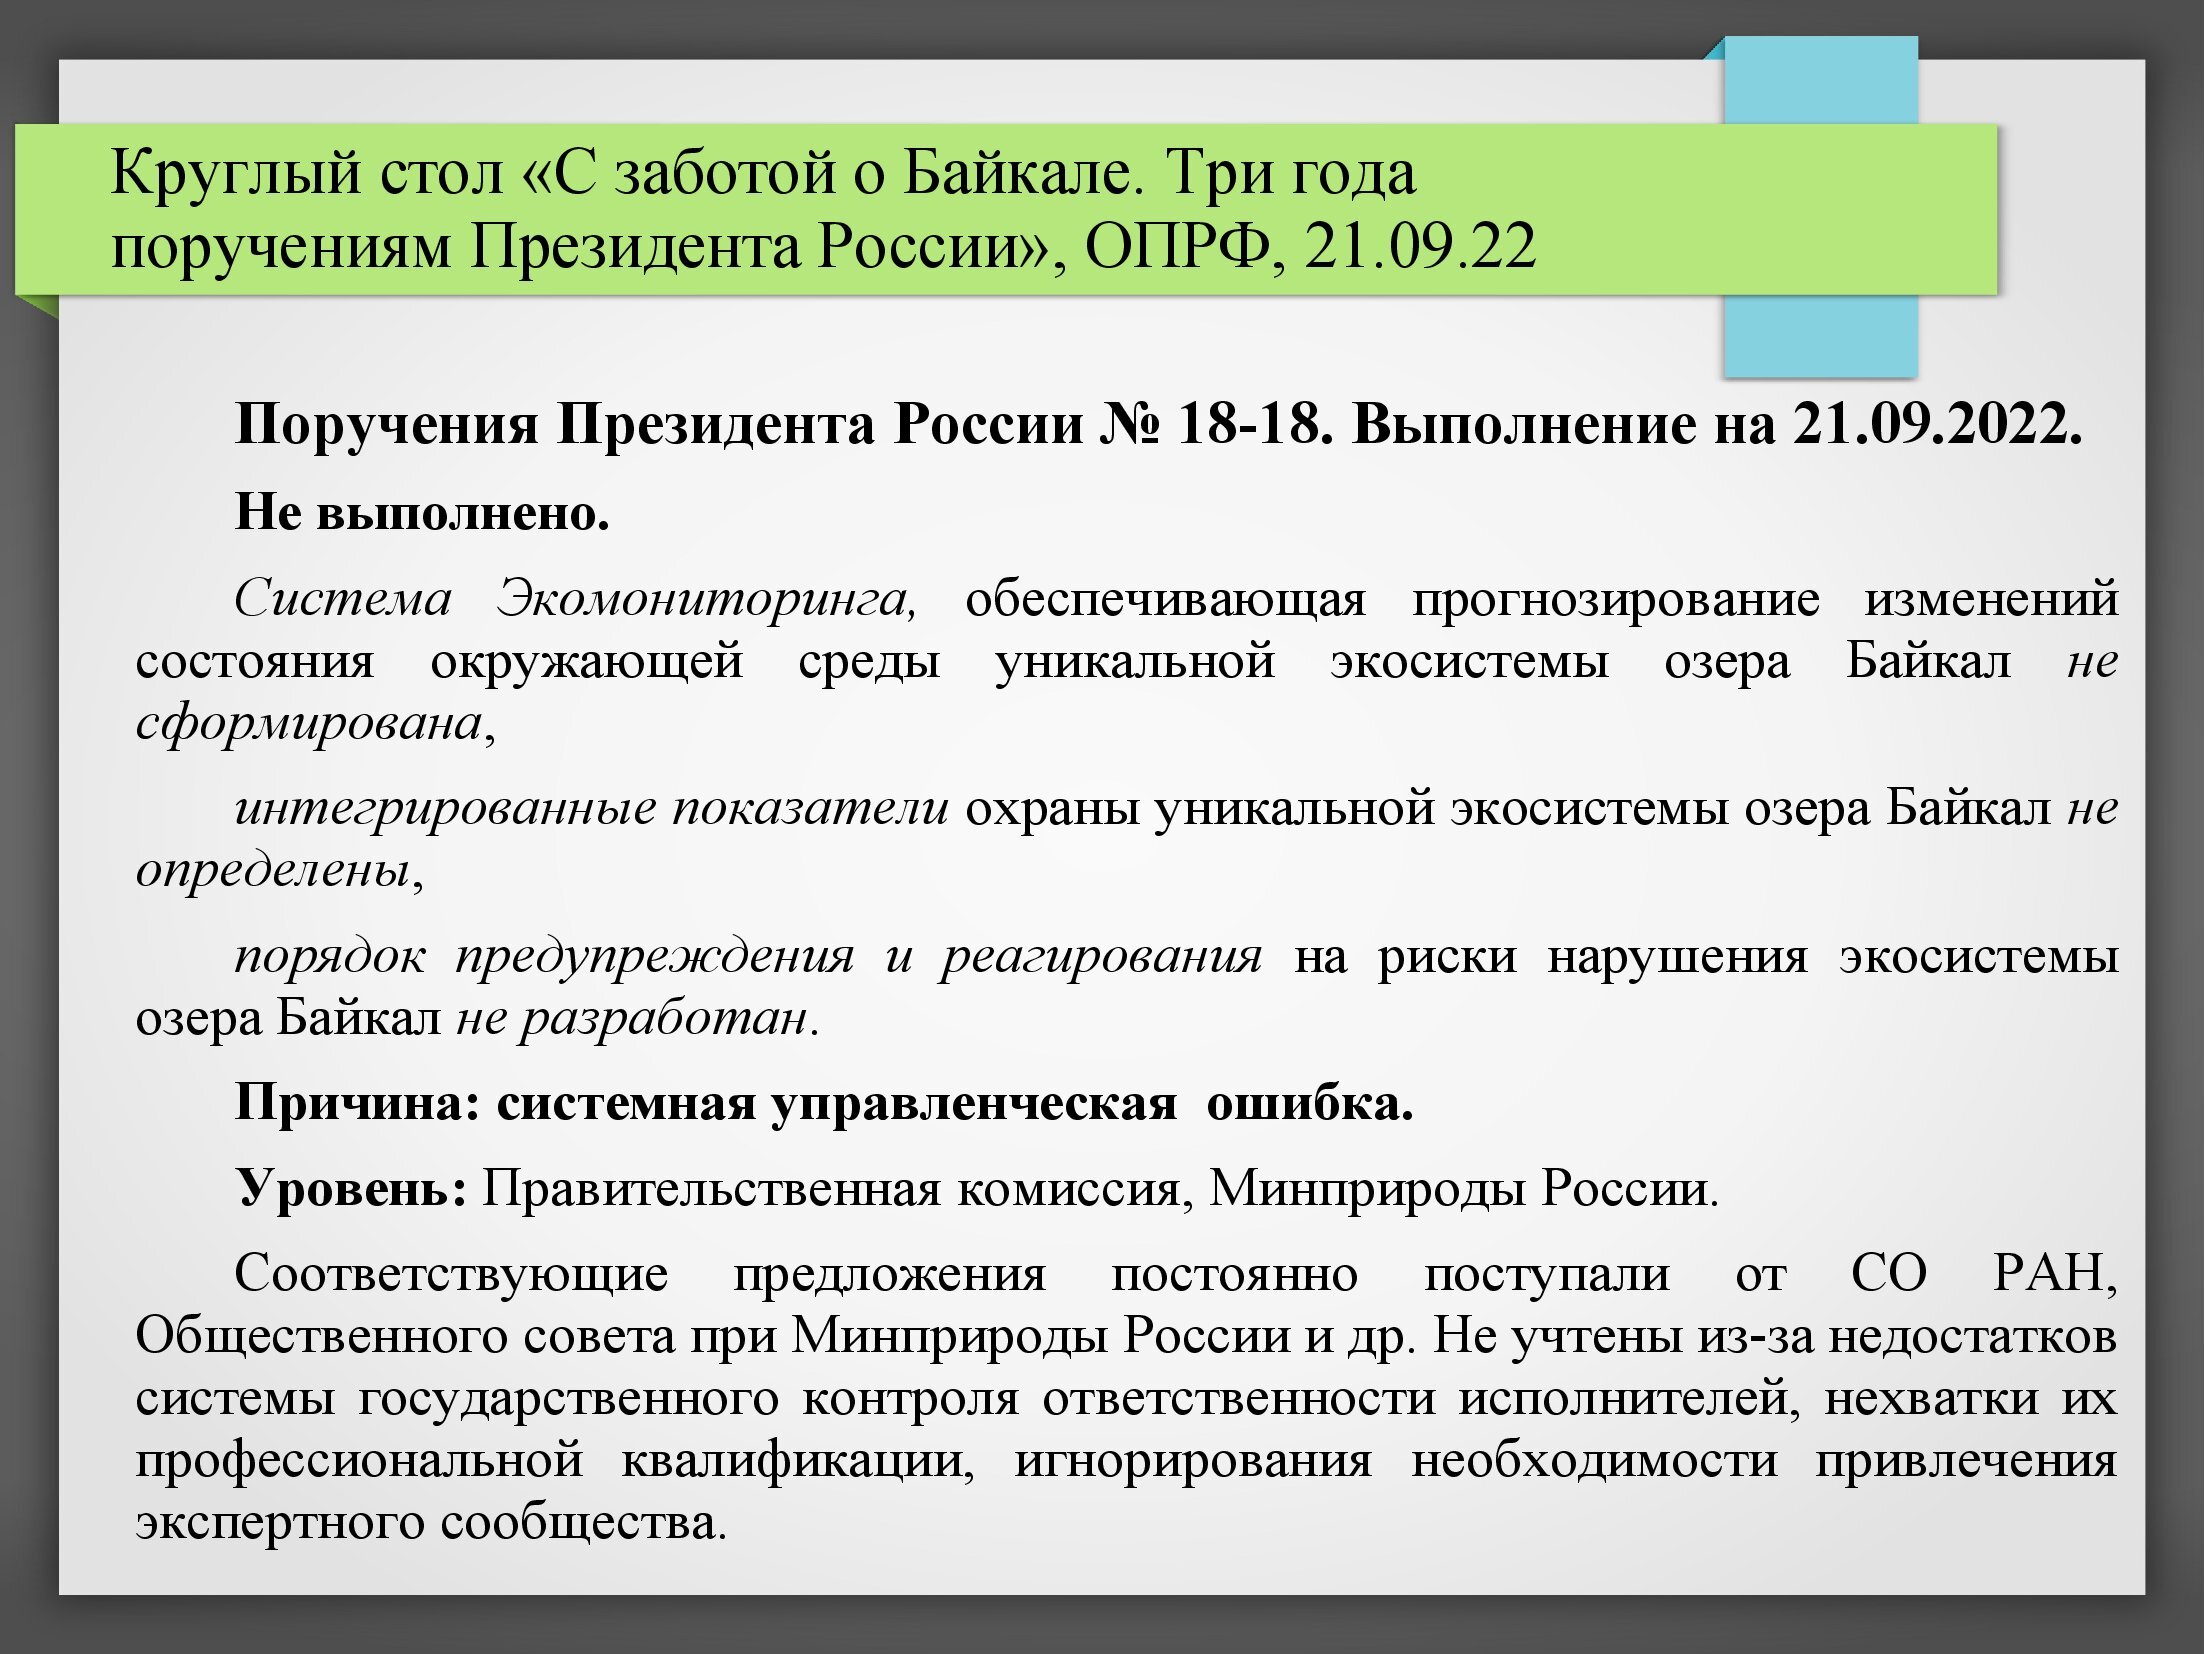 Байкал — национальное природное достояние и задачи по его сохранению (мнение) - фото 9